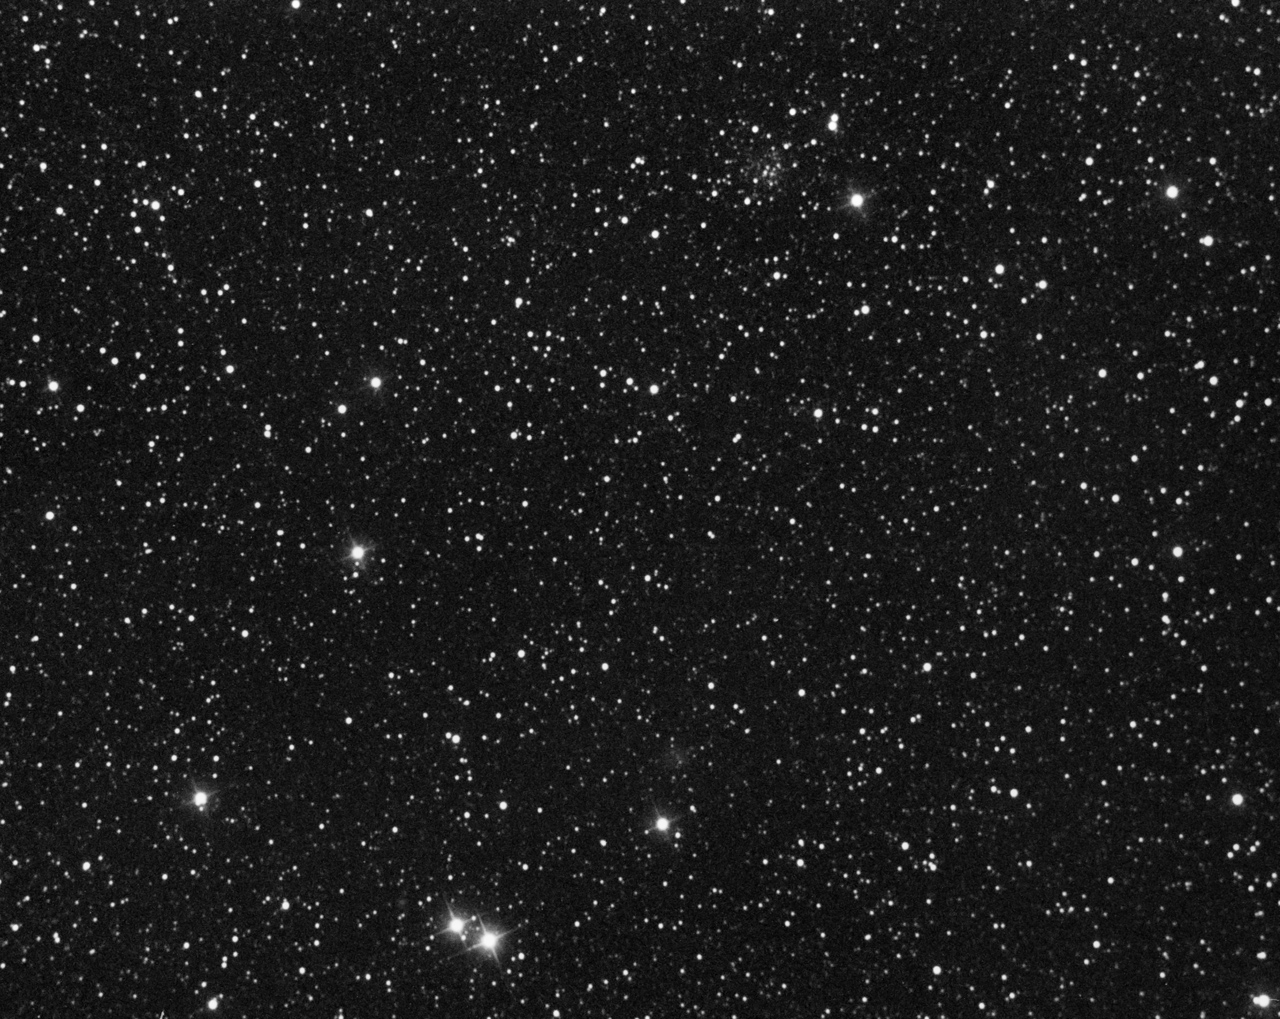 Globular Palomar 11 in Aquila